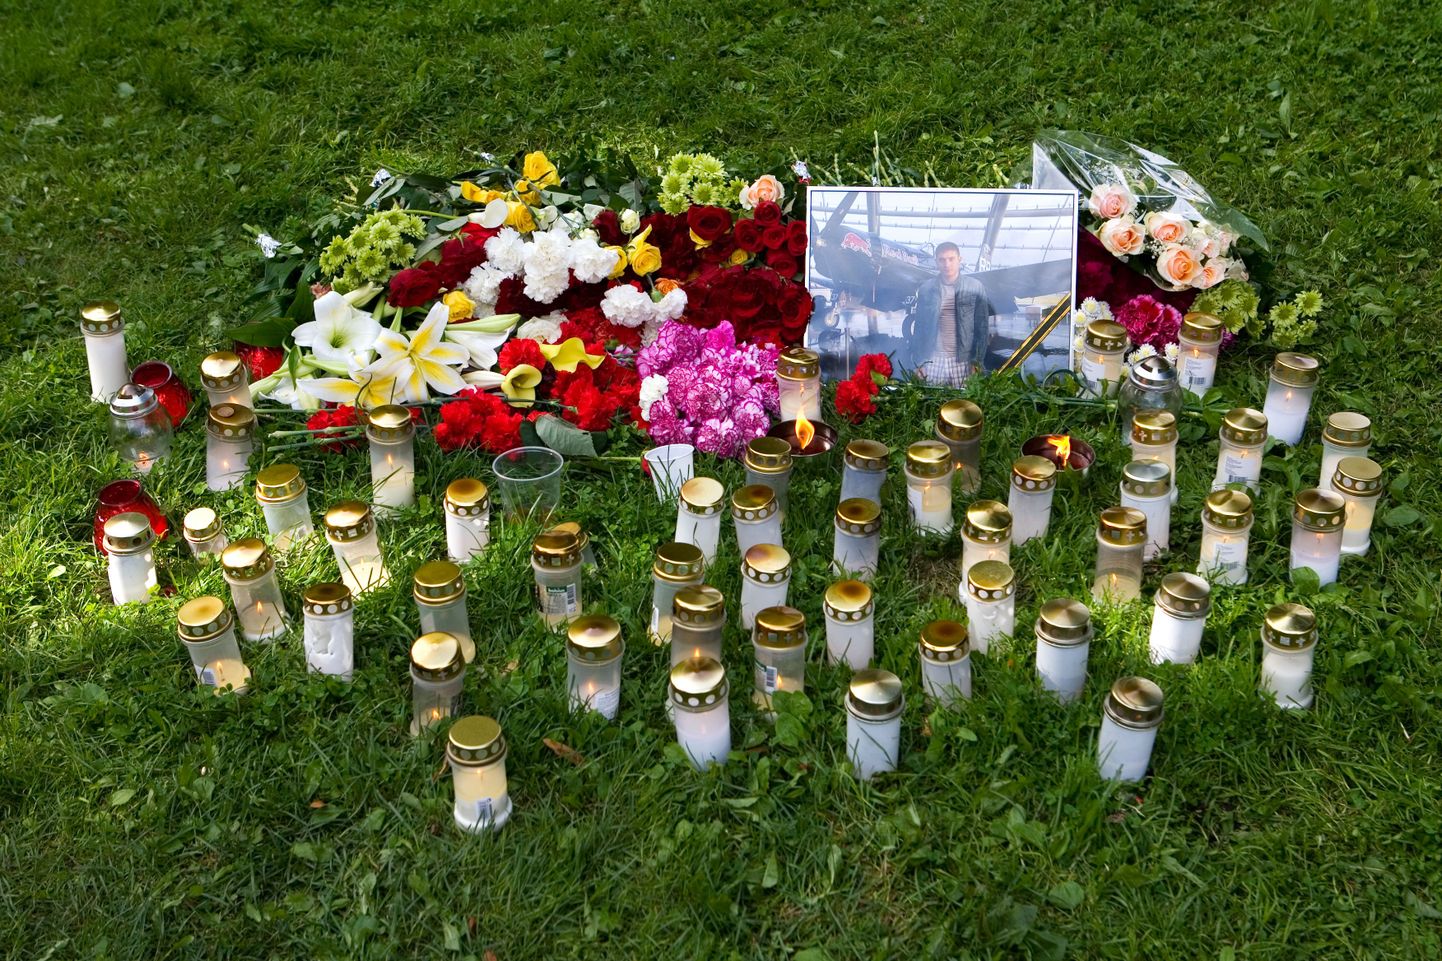 Друзья убитого принесли к месту убийства цветы и свечи.